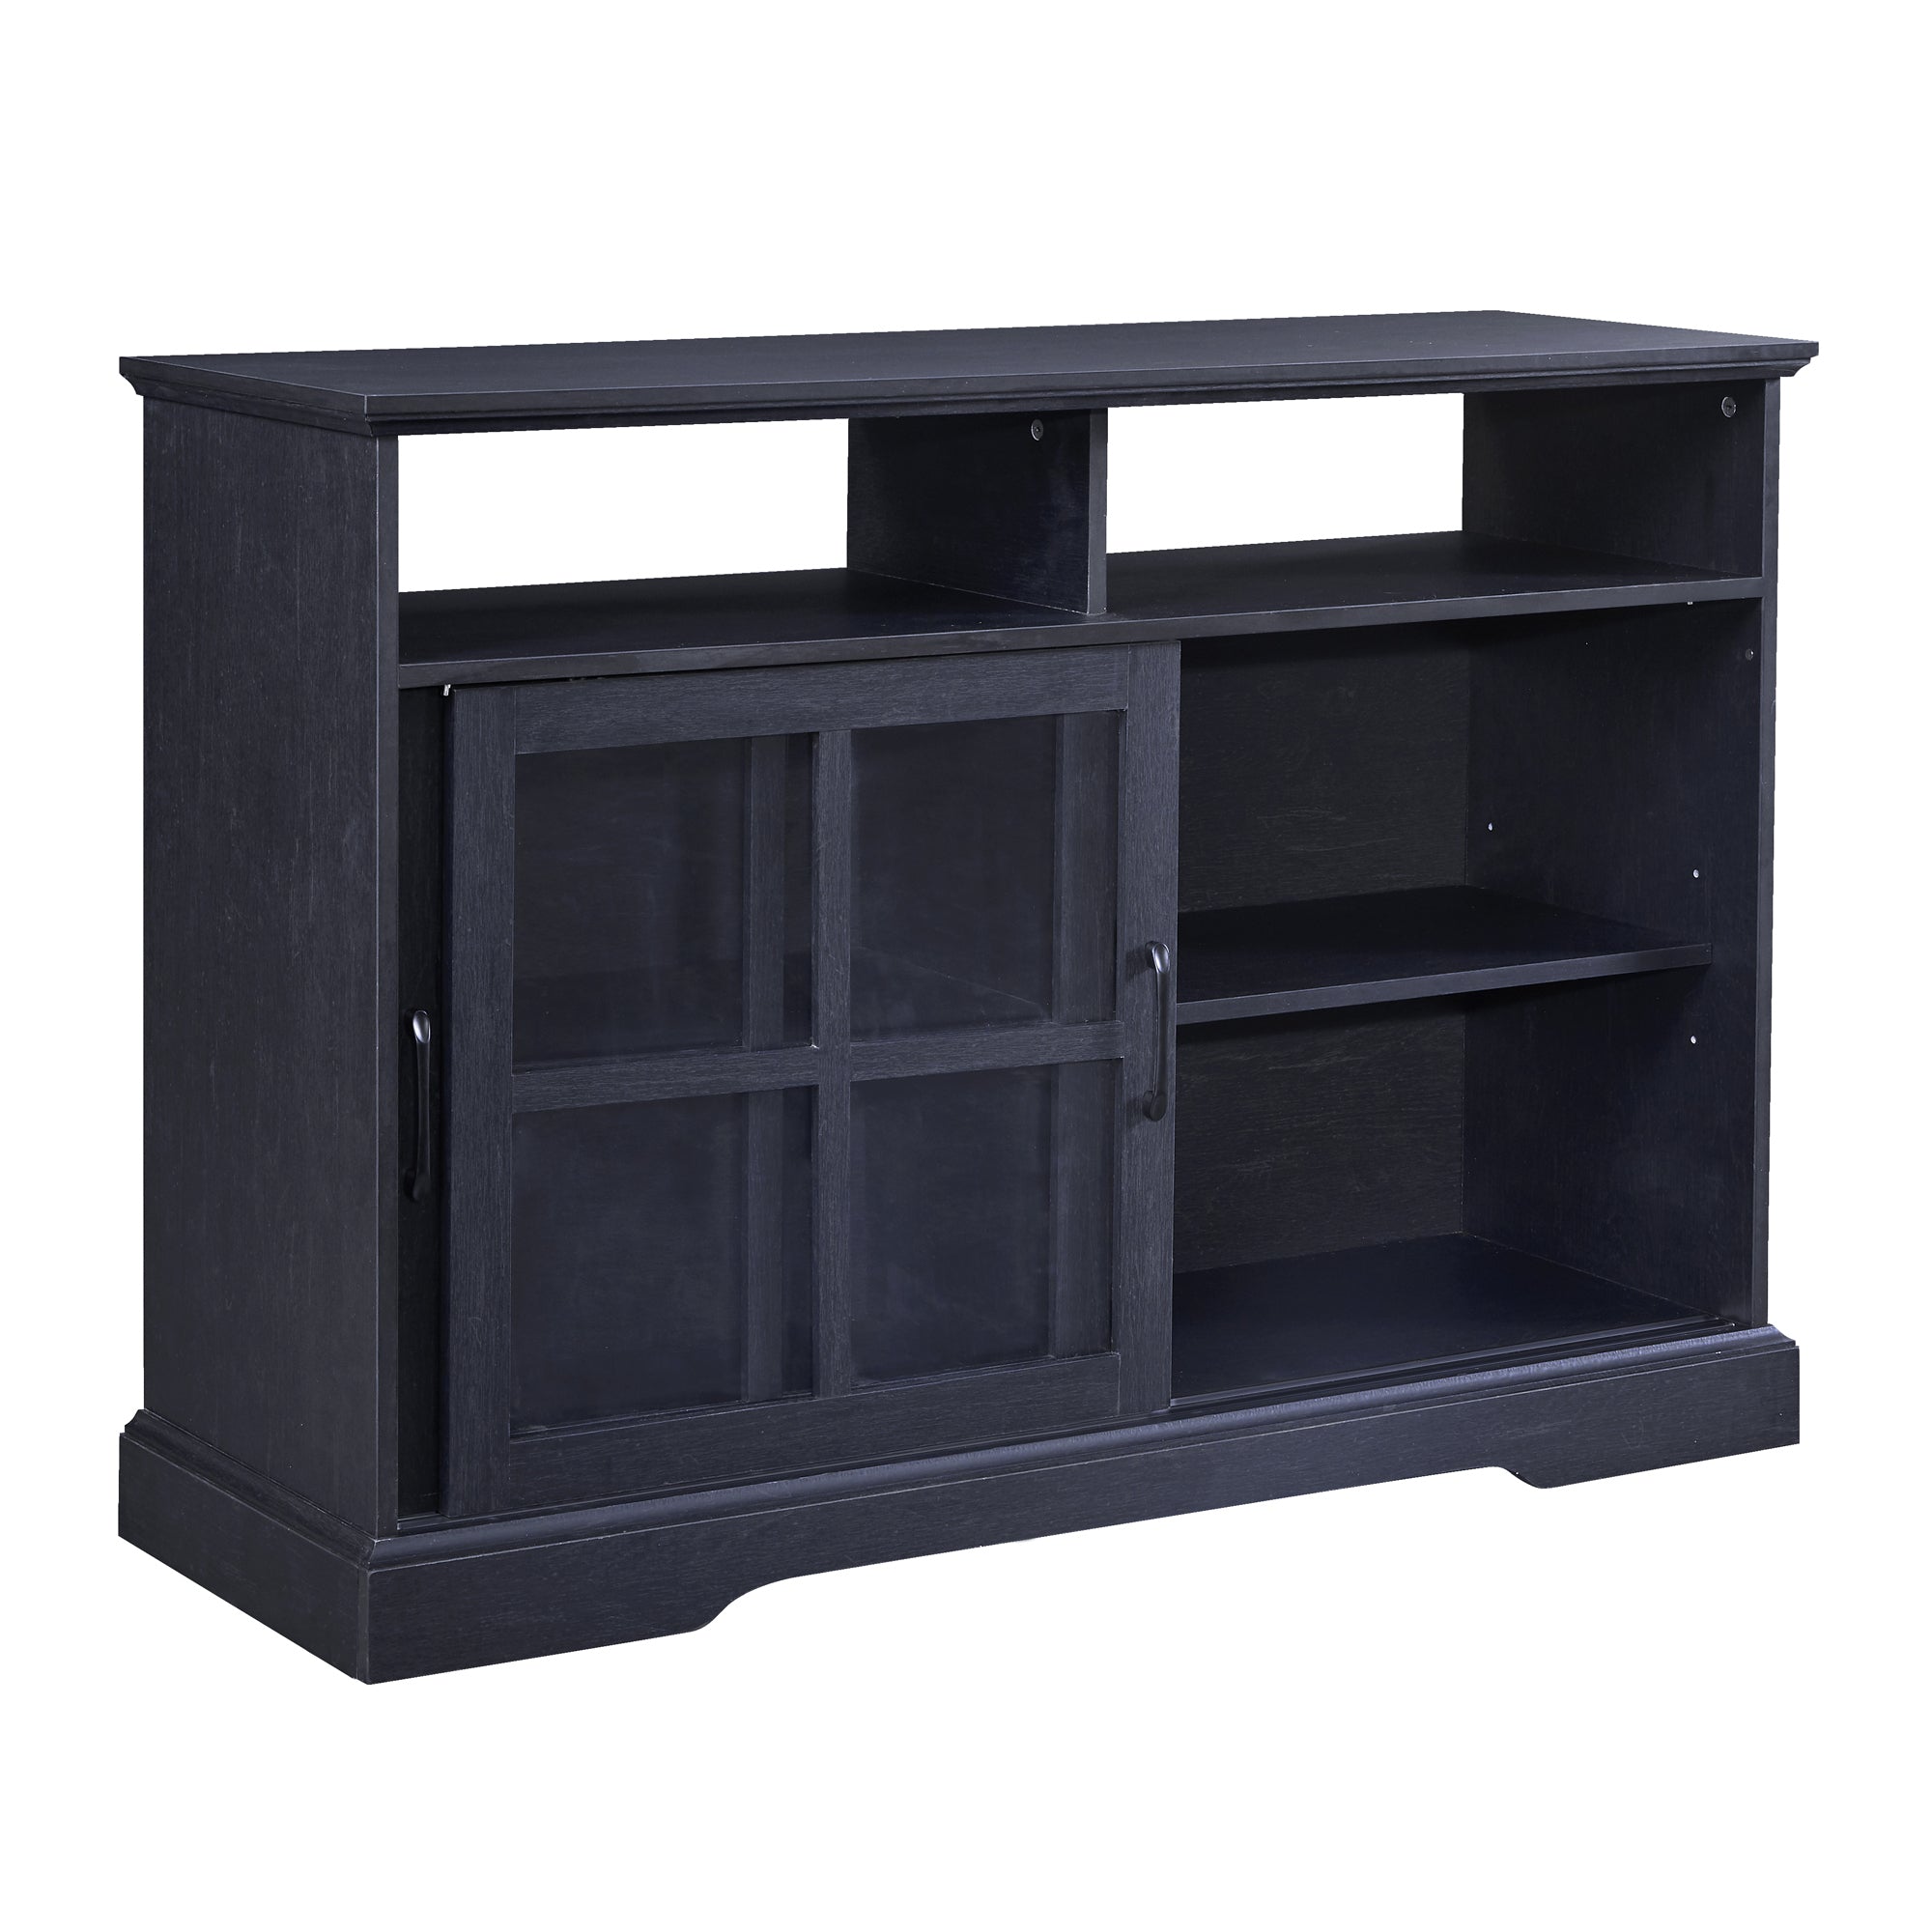 TREXM 2 Glass Sliding Doors and Adjustable Shelves Dining Room Storage Cabinet (Black)